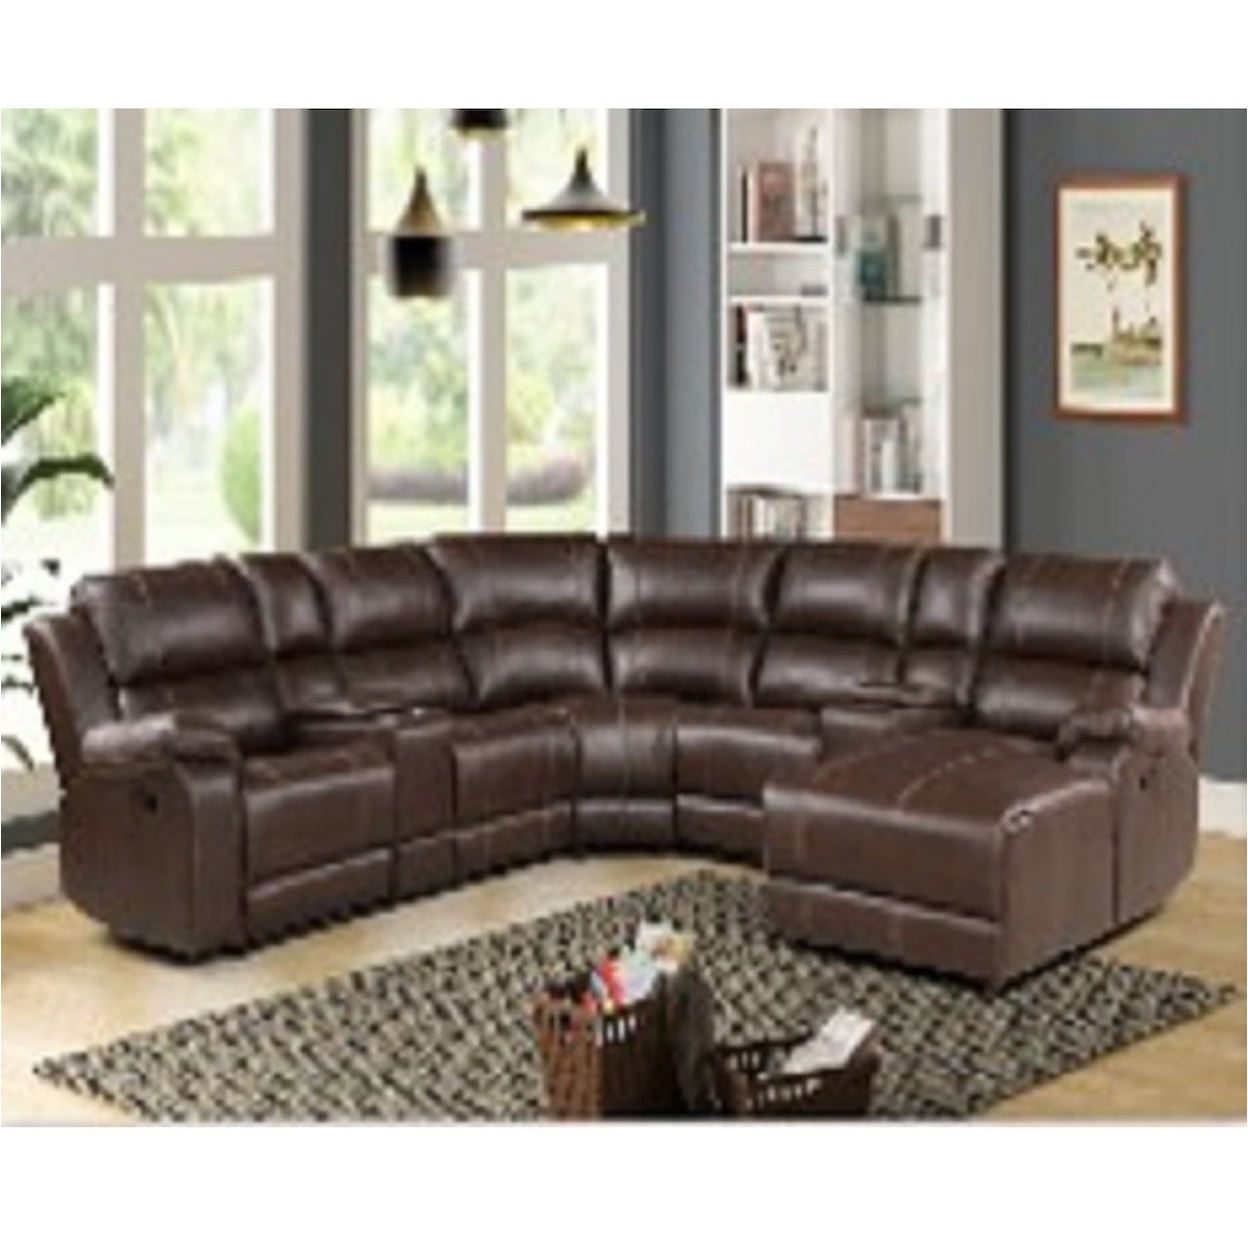 Acme Furniture Fero Sectional Sofa